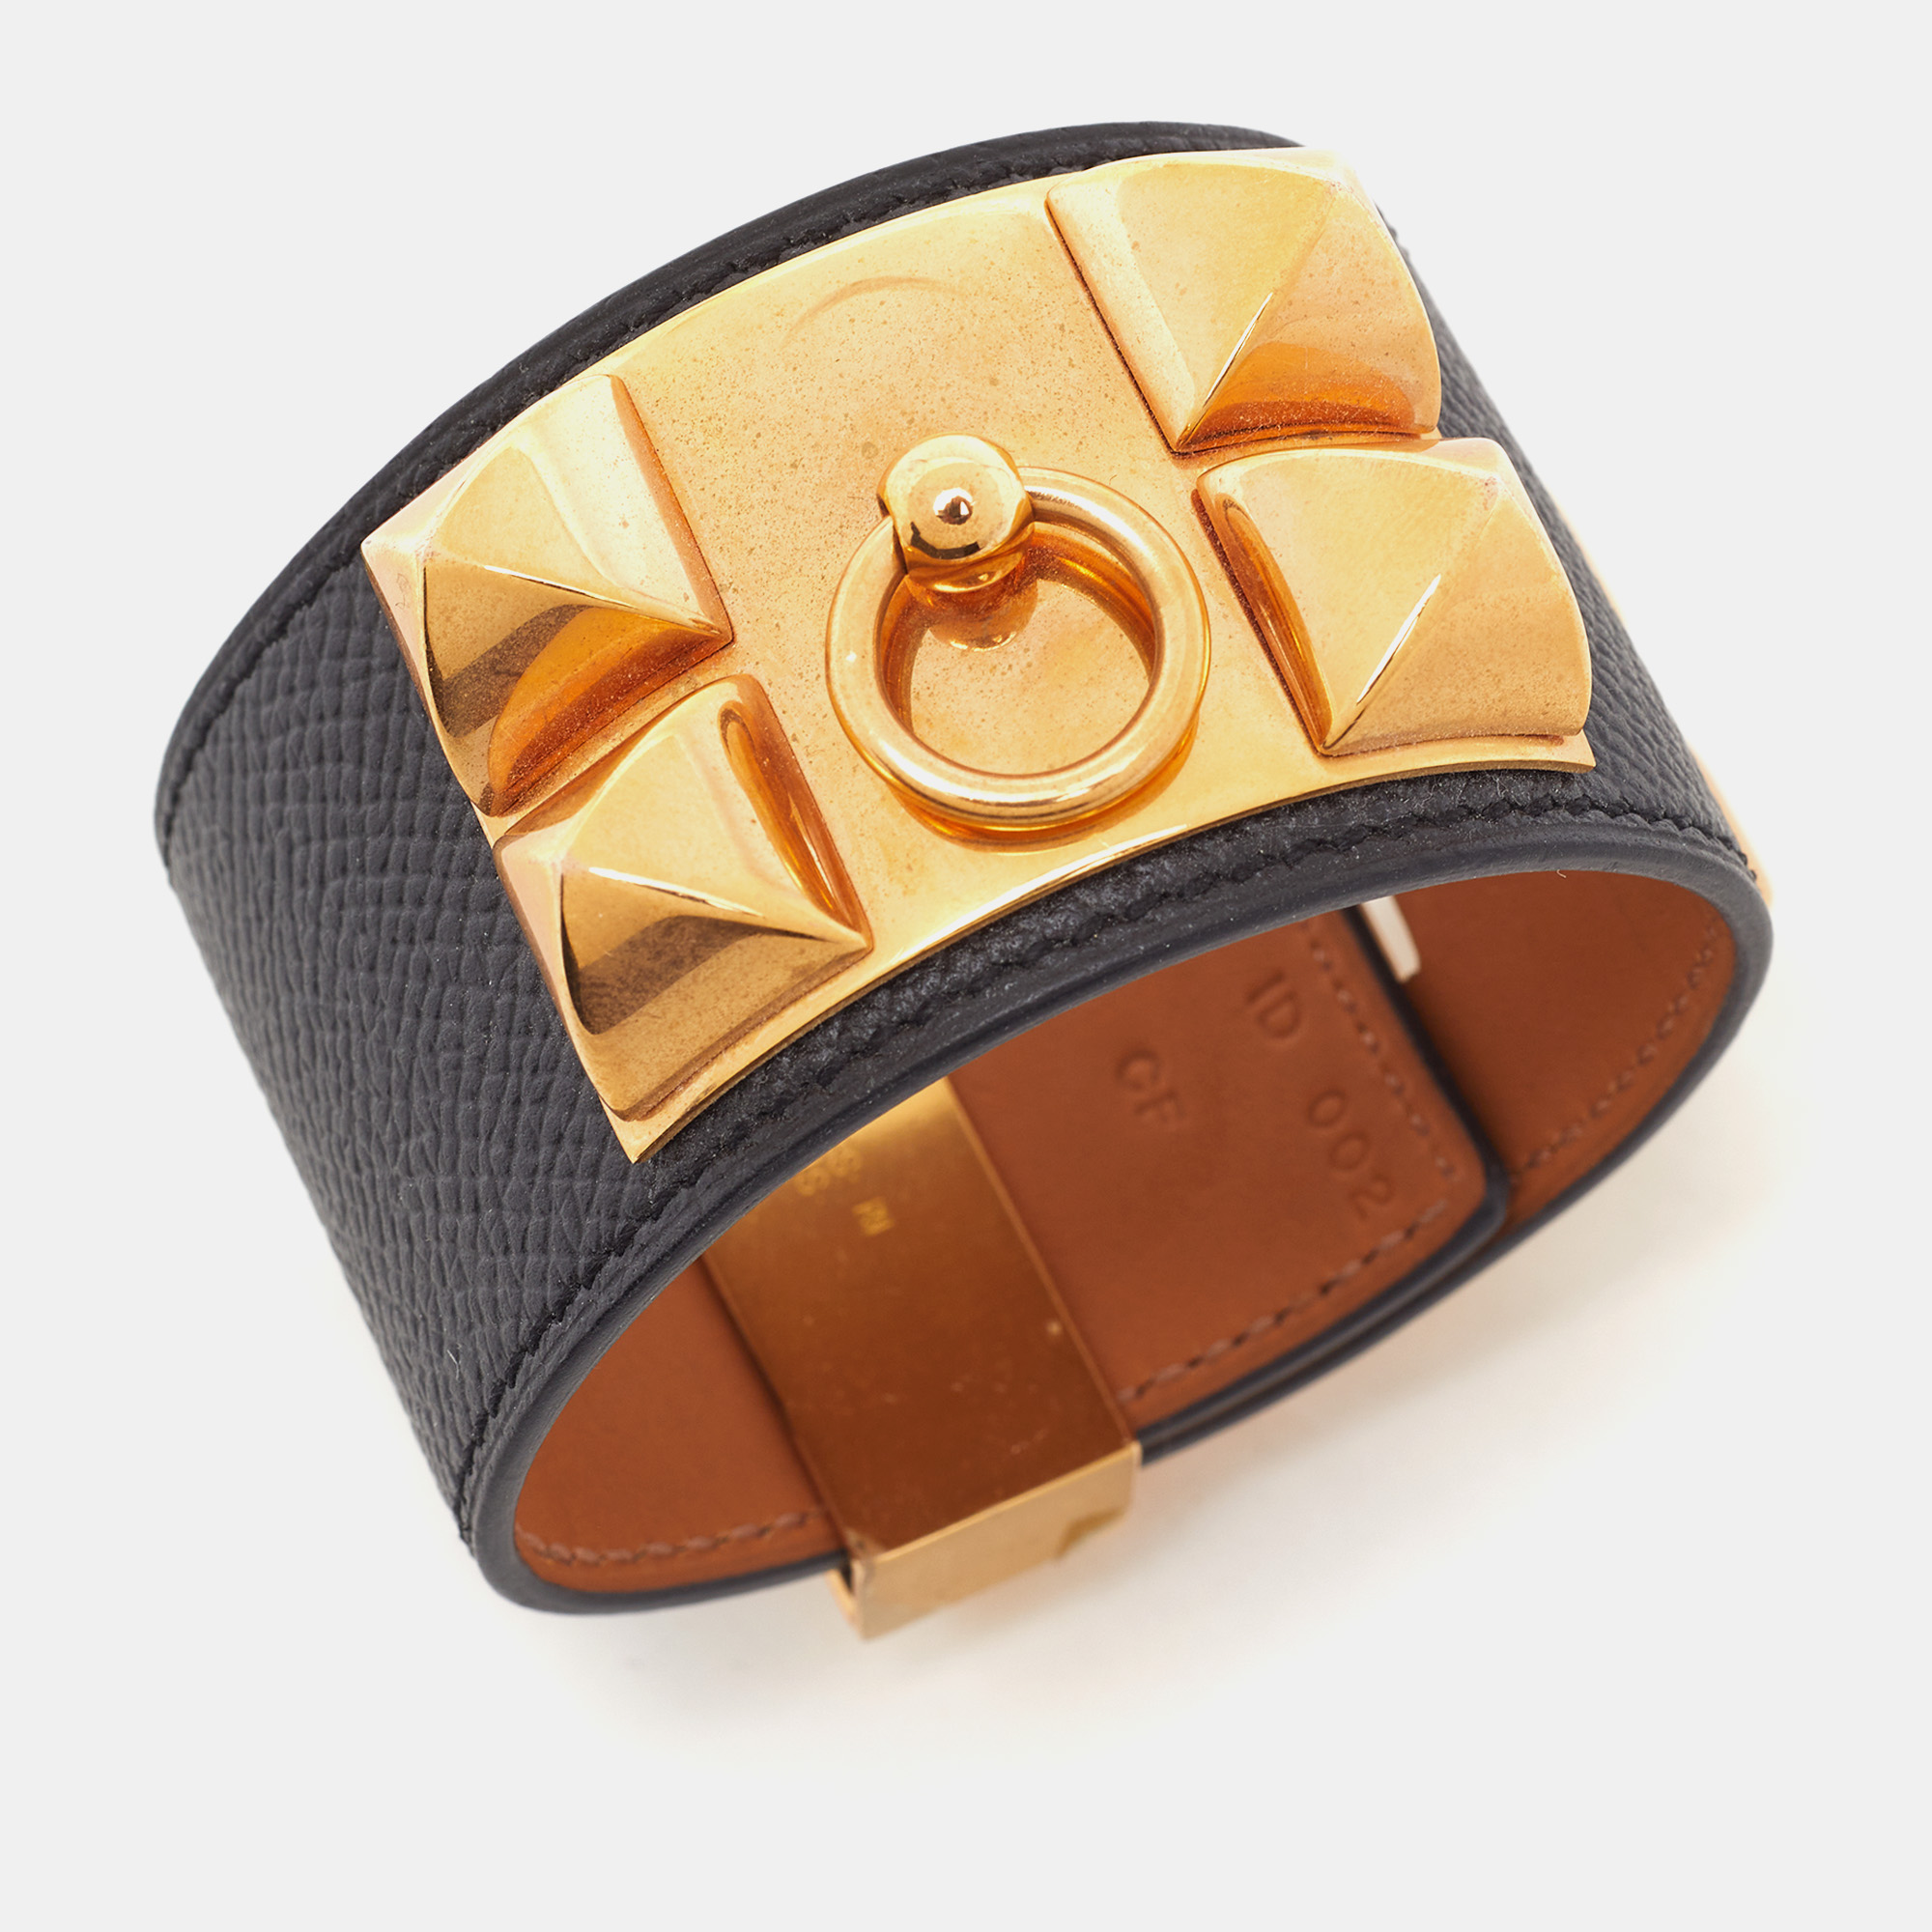 

Hermès Collier de Chien Noir Leather Cuff Bracelet, Black